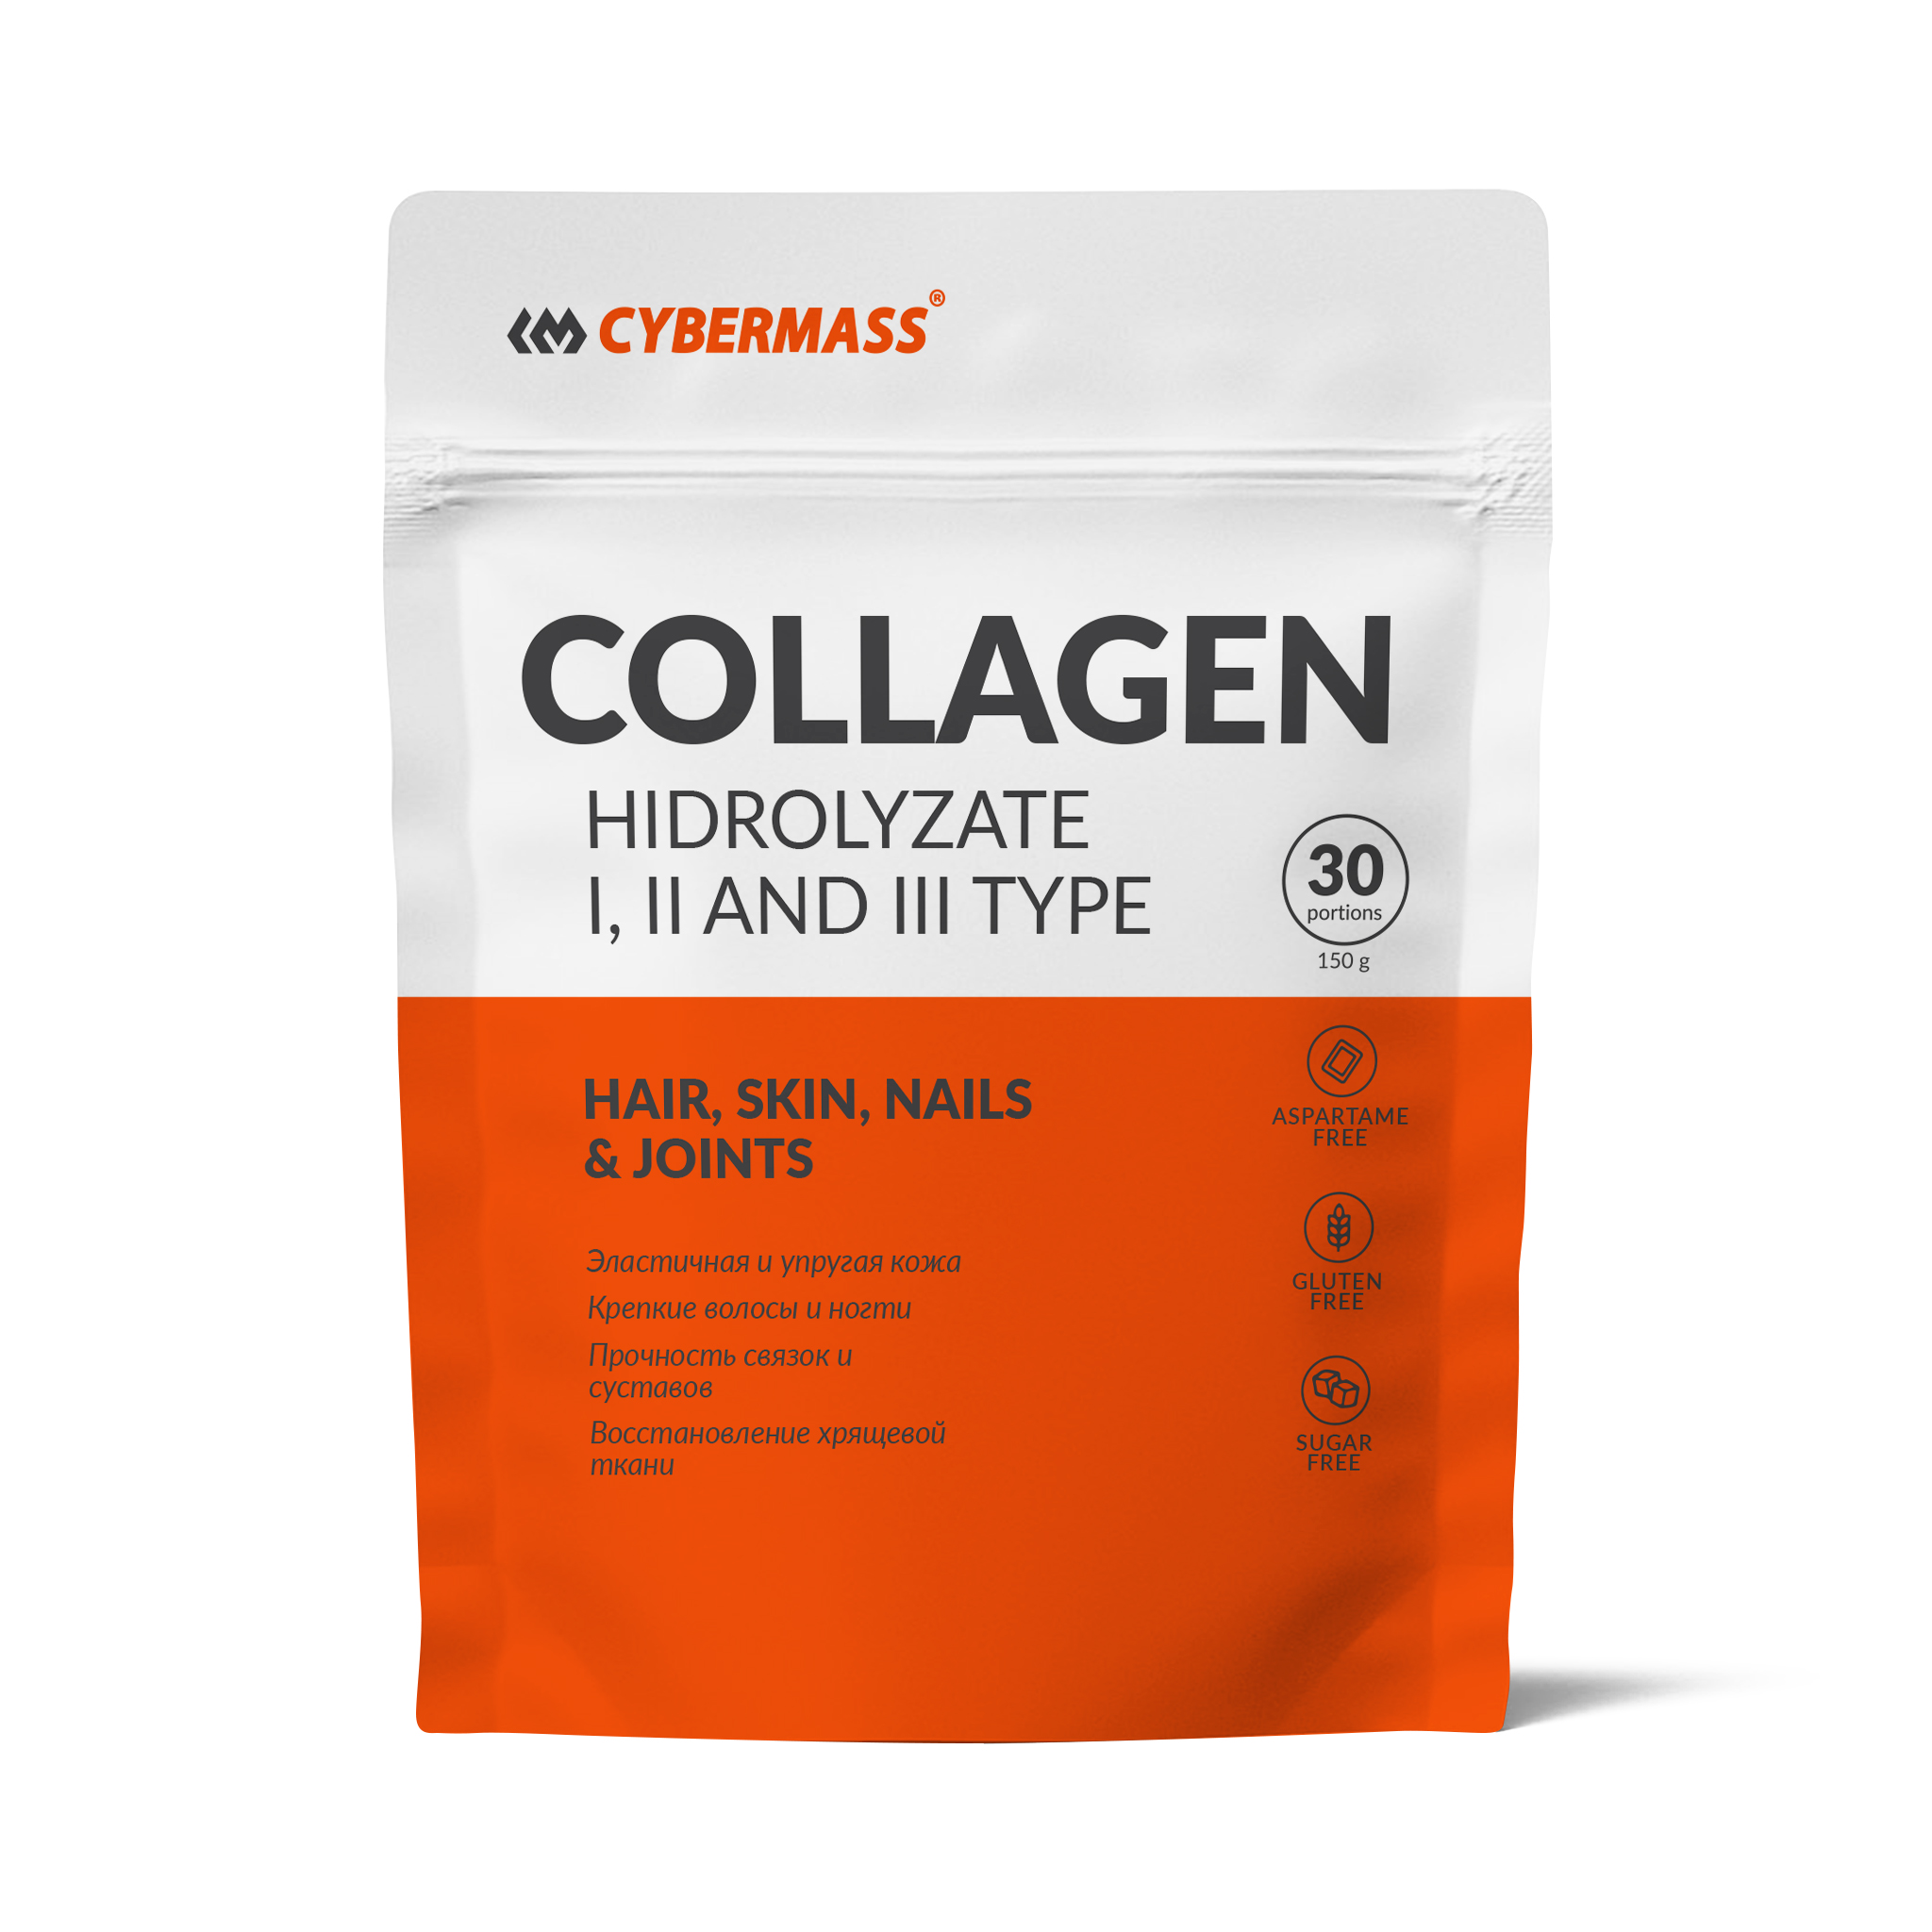 Коллаген CYBERMASS Collagen Hydrolyzate, без вкуса, 150 г